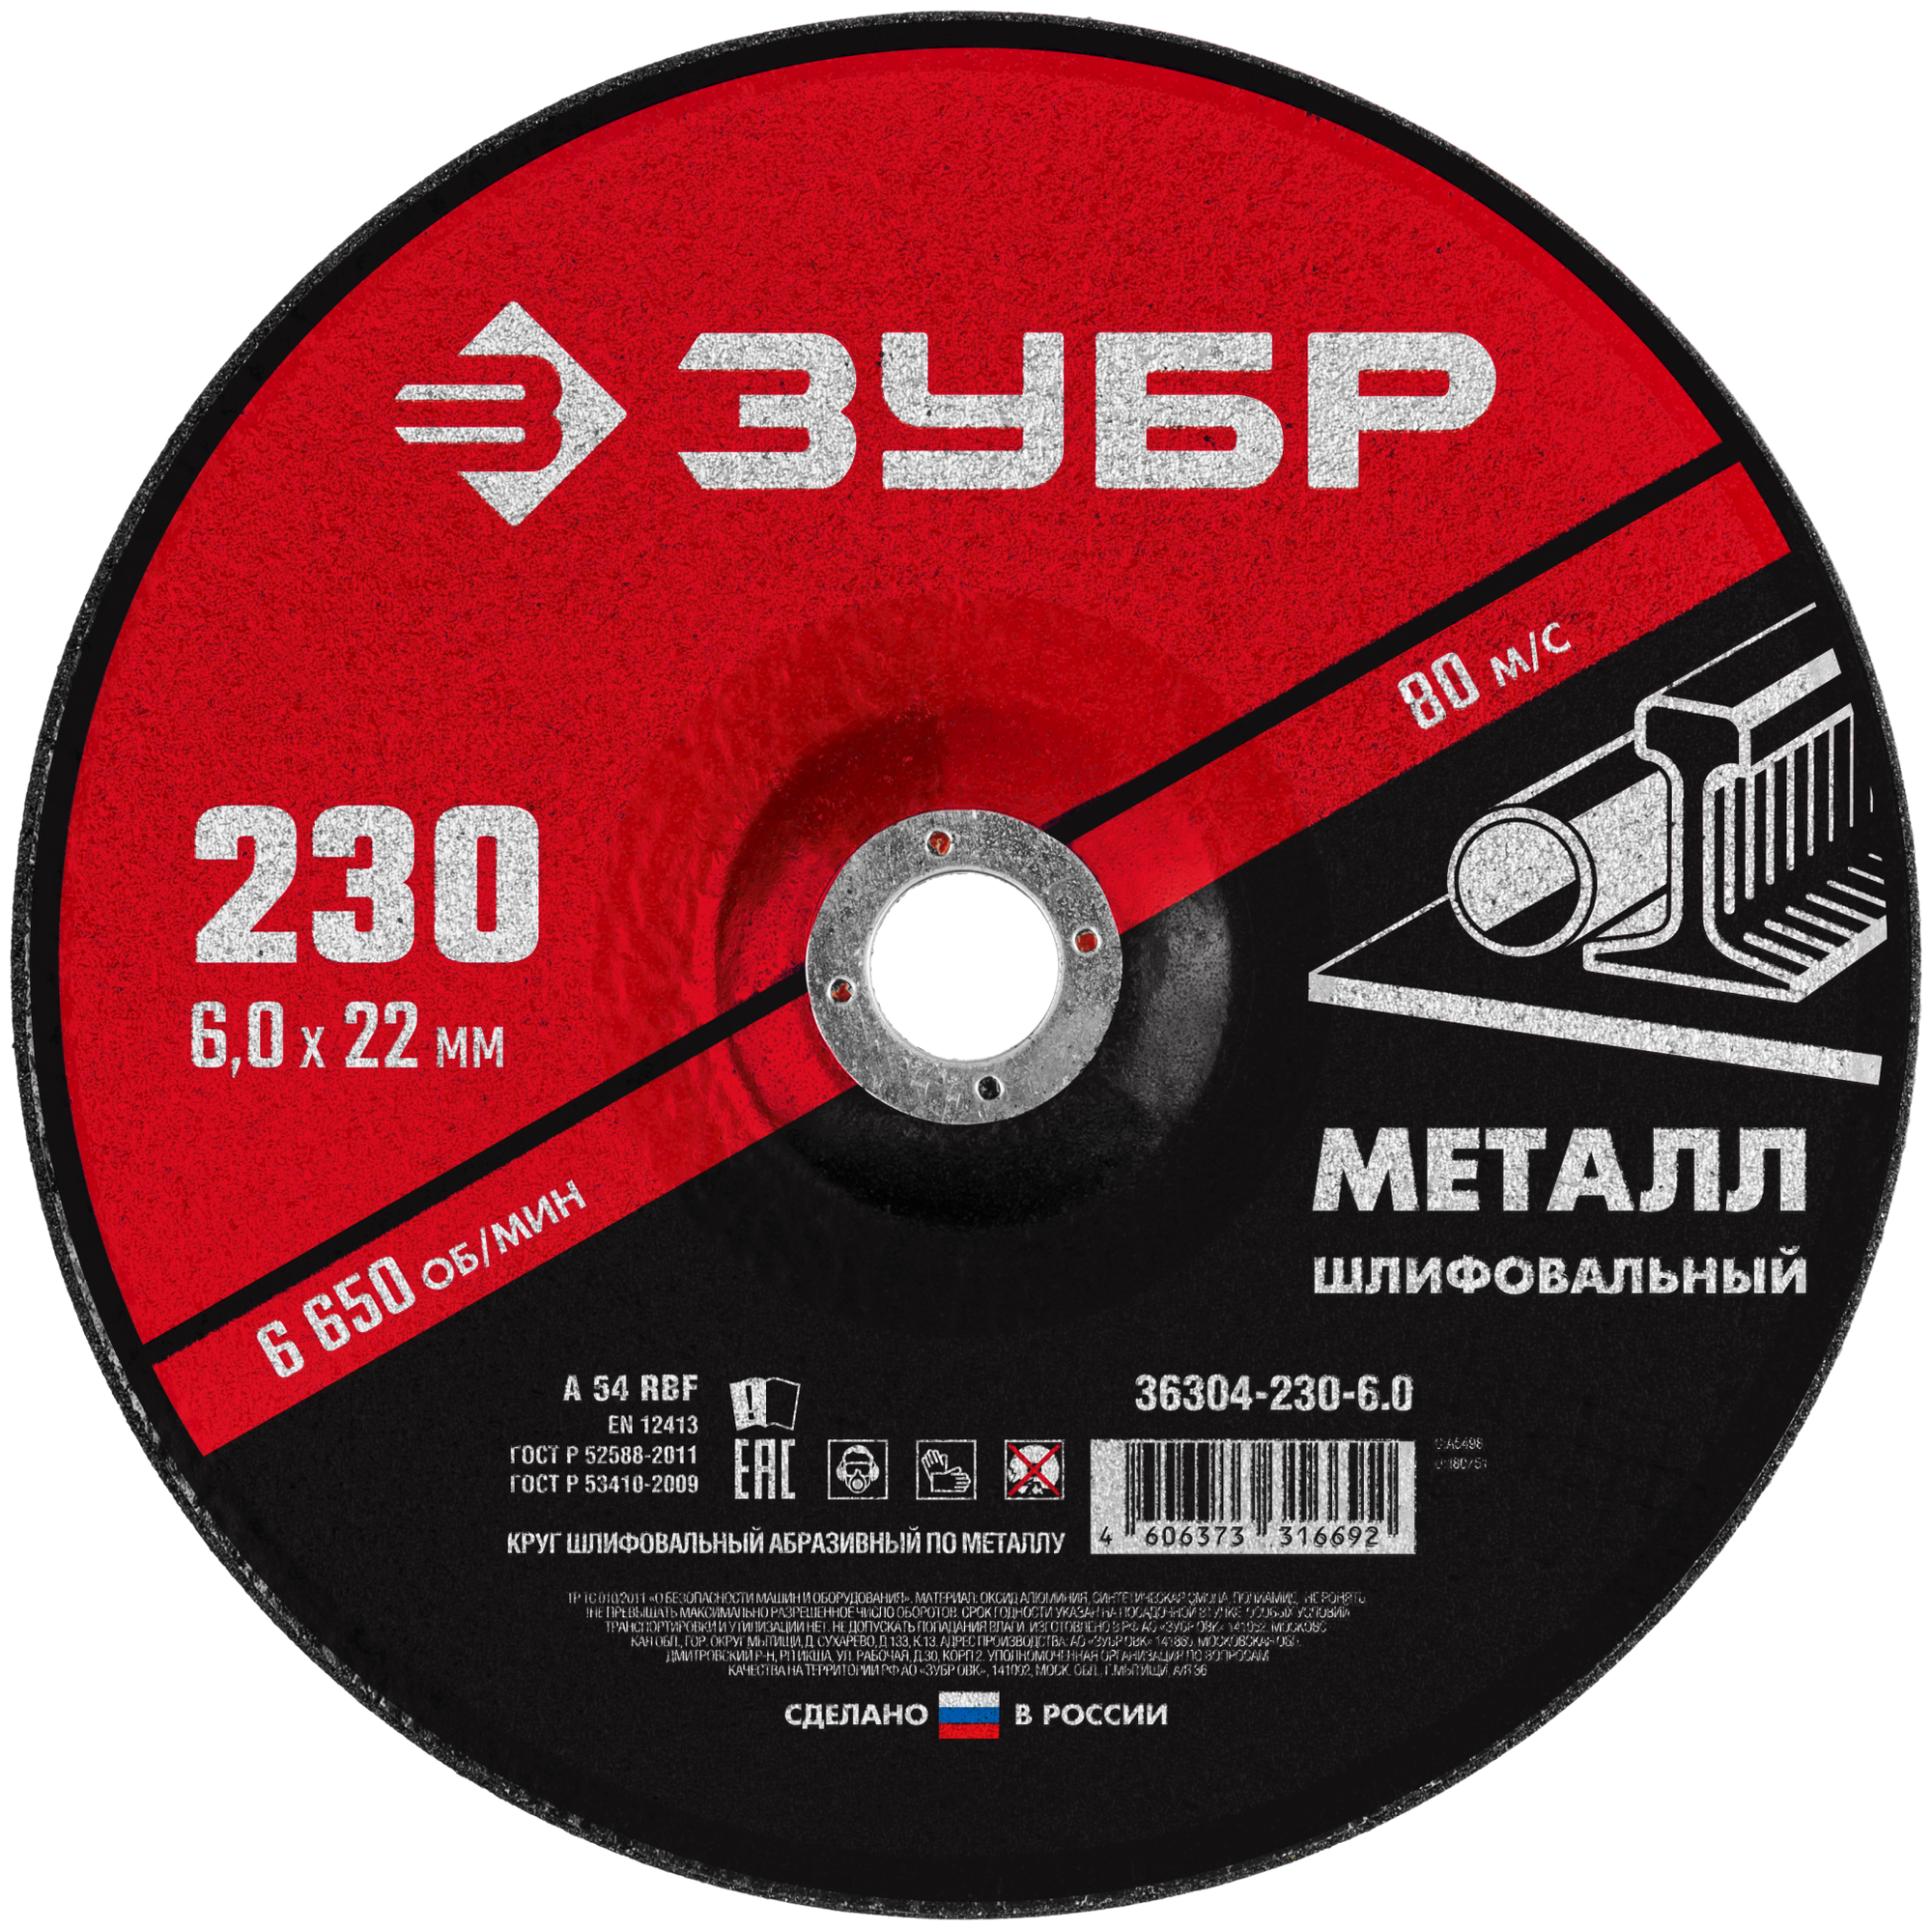 Шлифовальный абразивный диск ЗУБР 36304-230-6.0